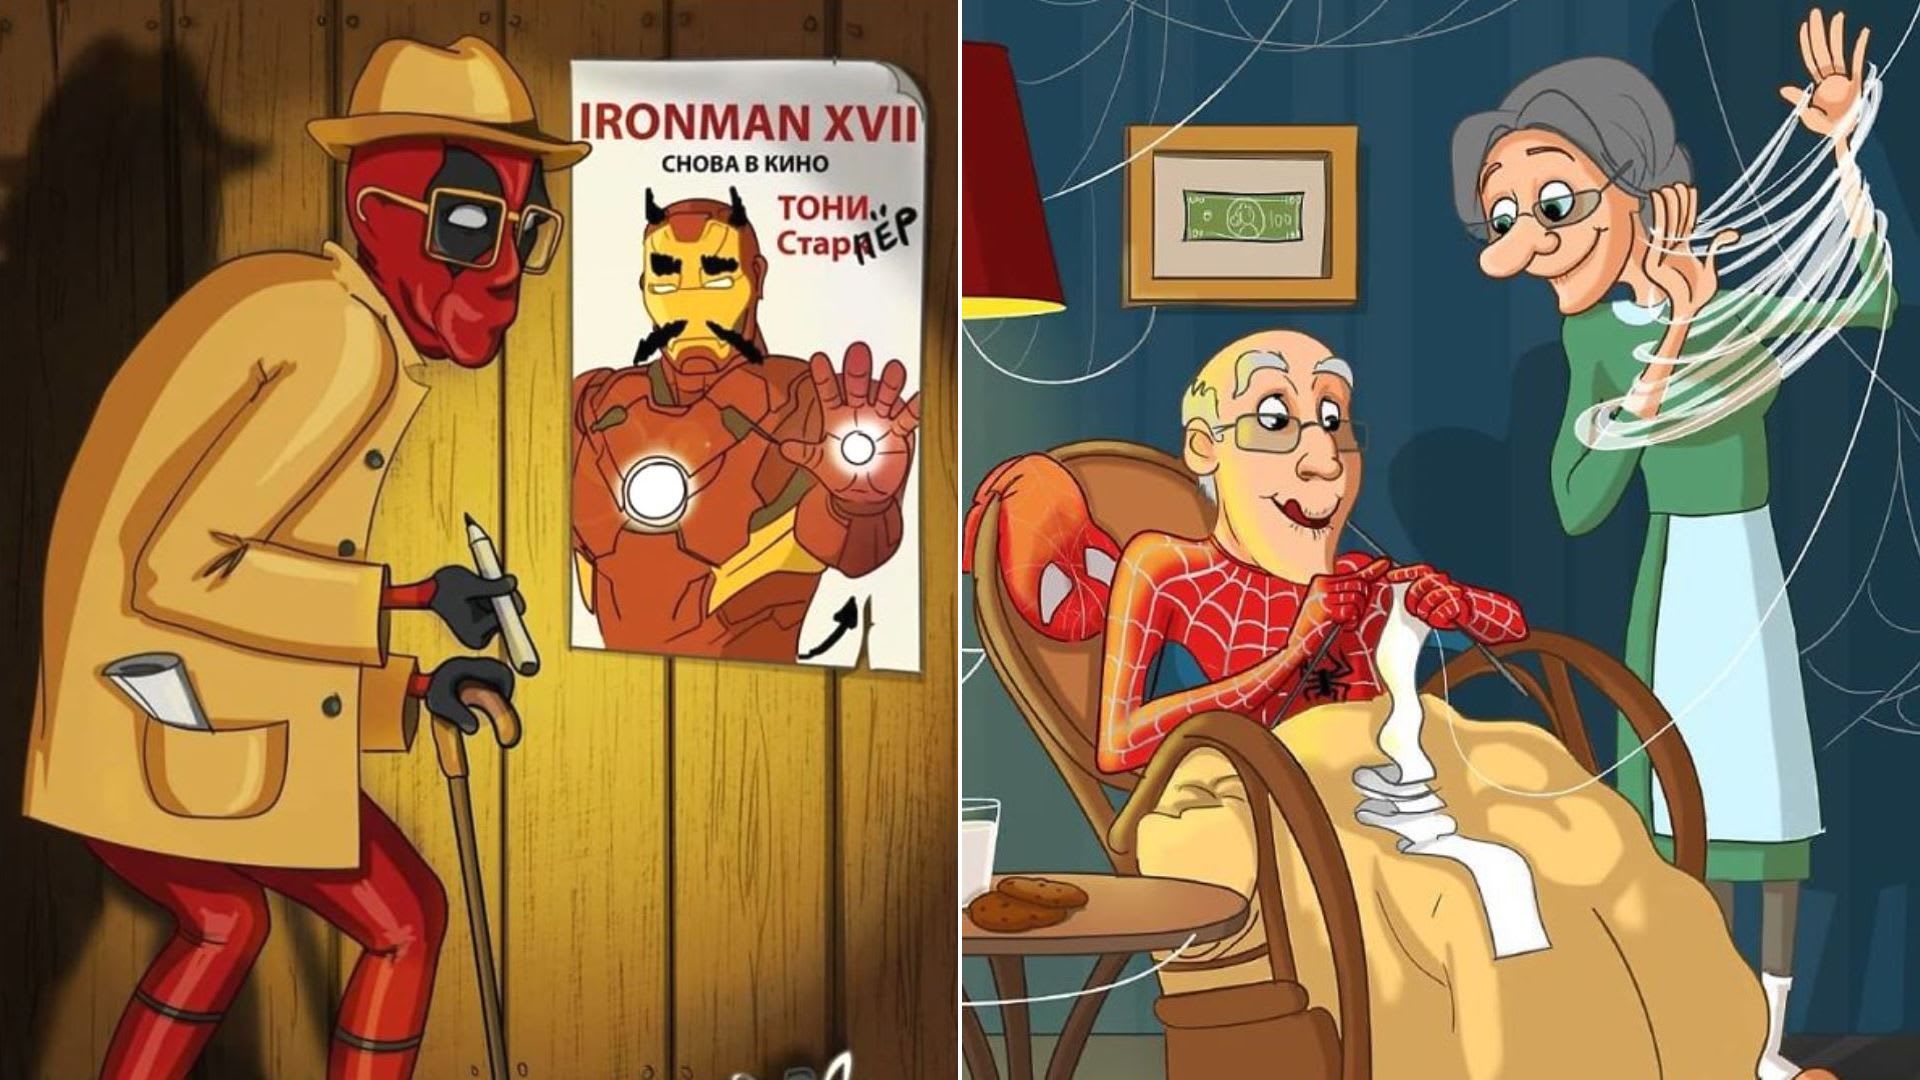 Komiksoví hrdinové v důchodu